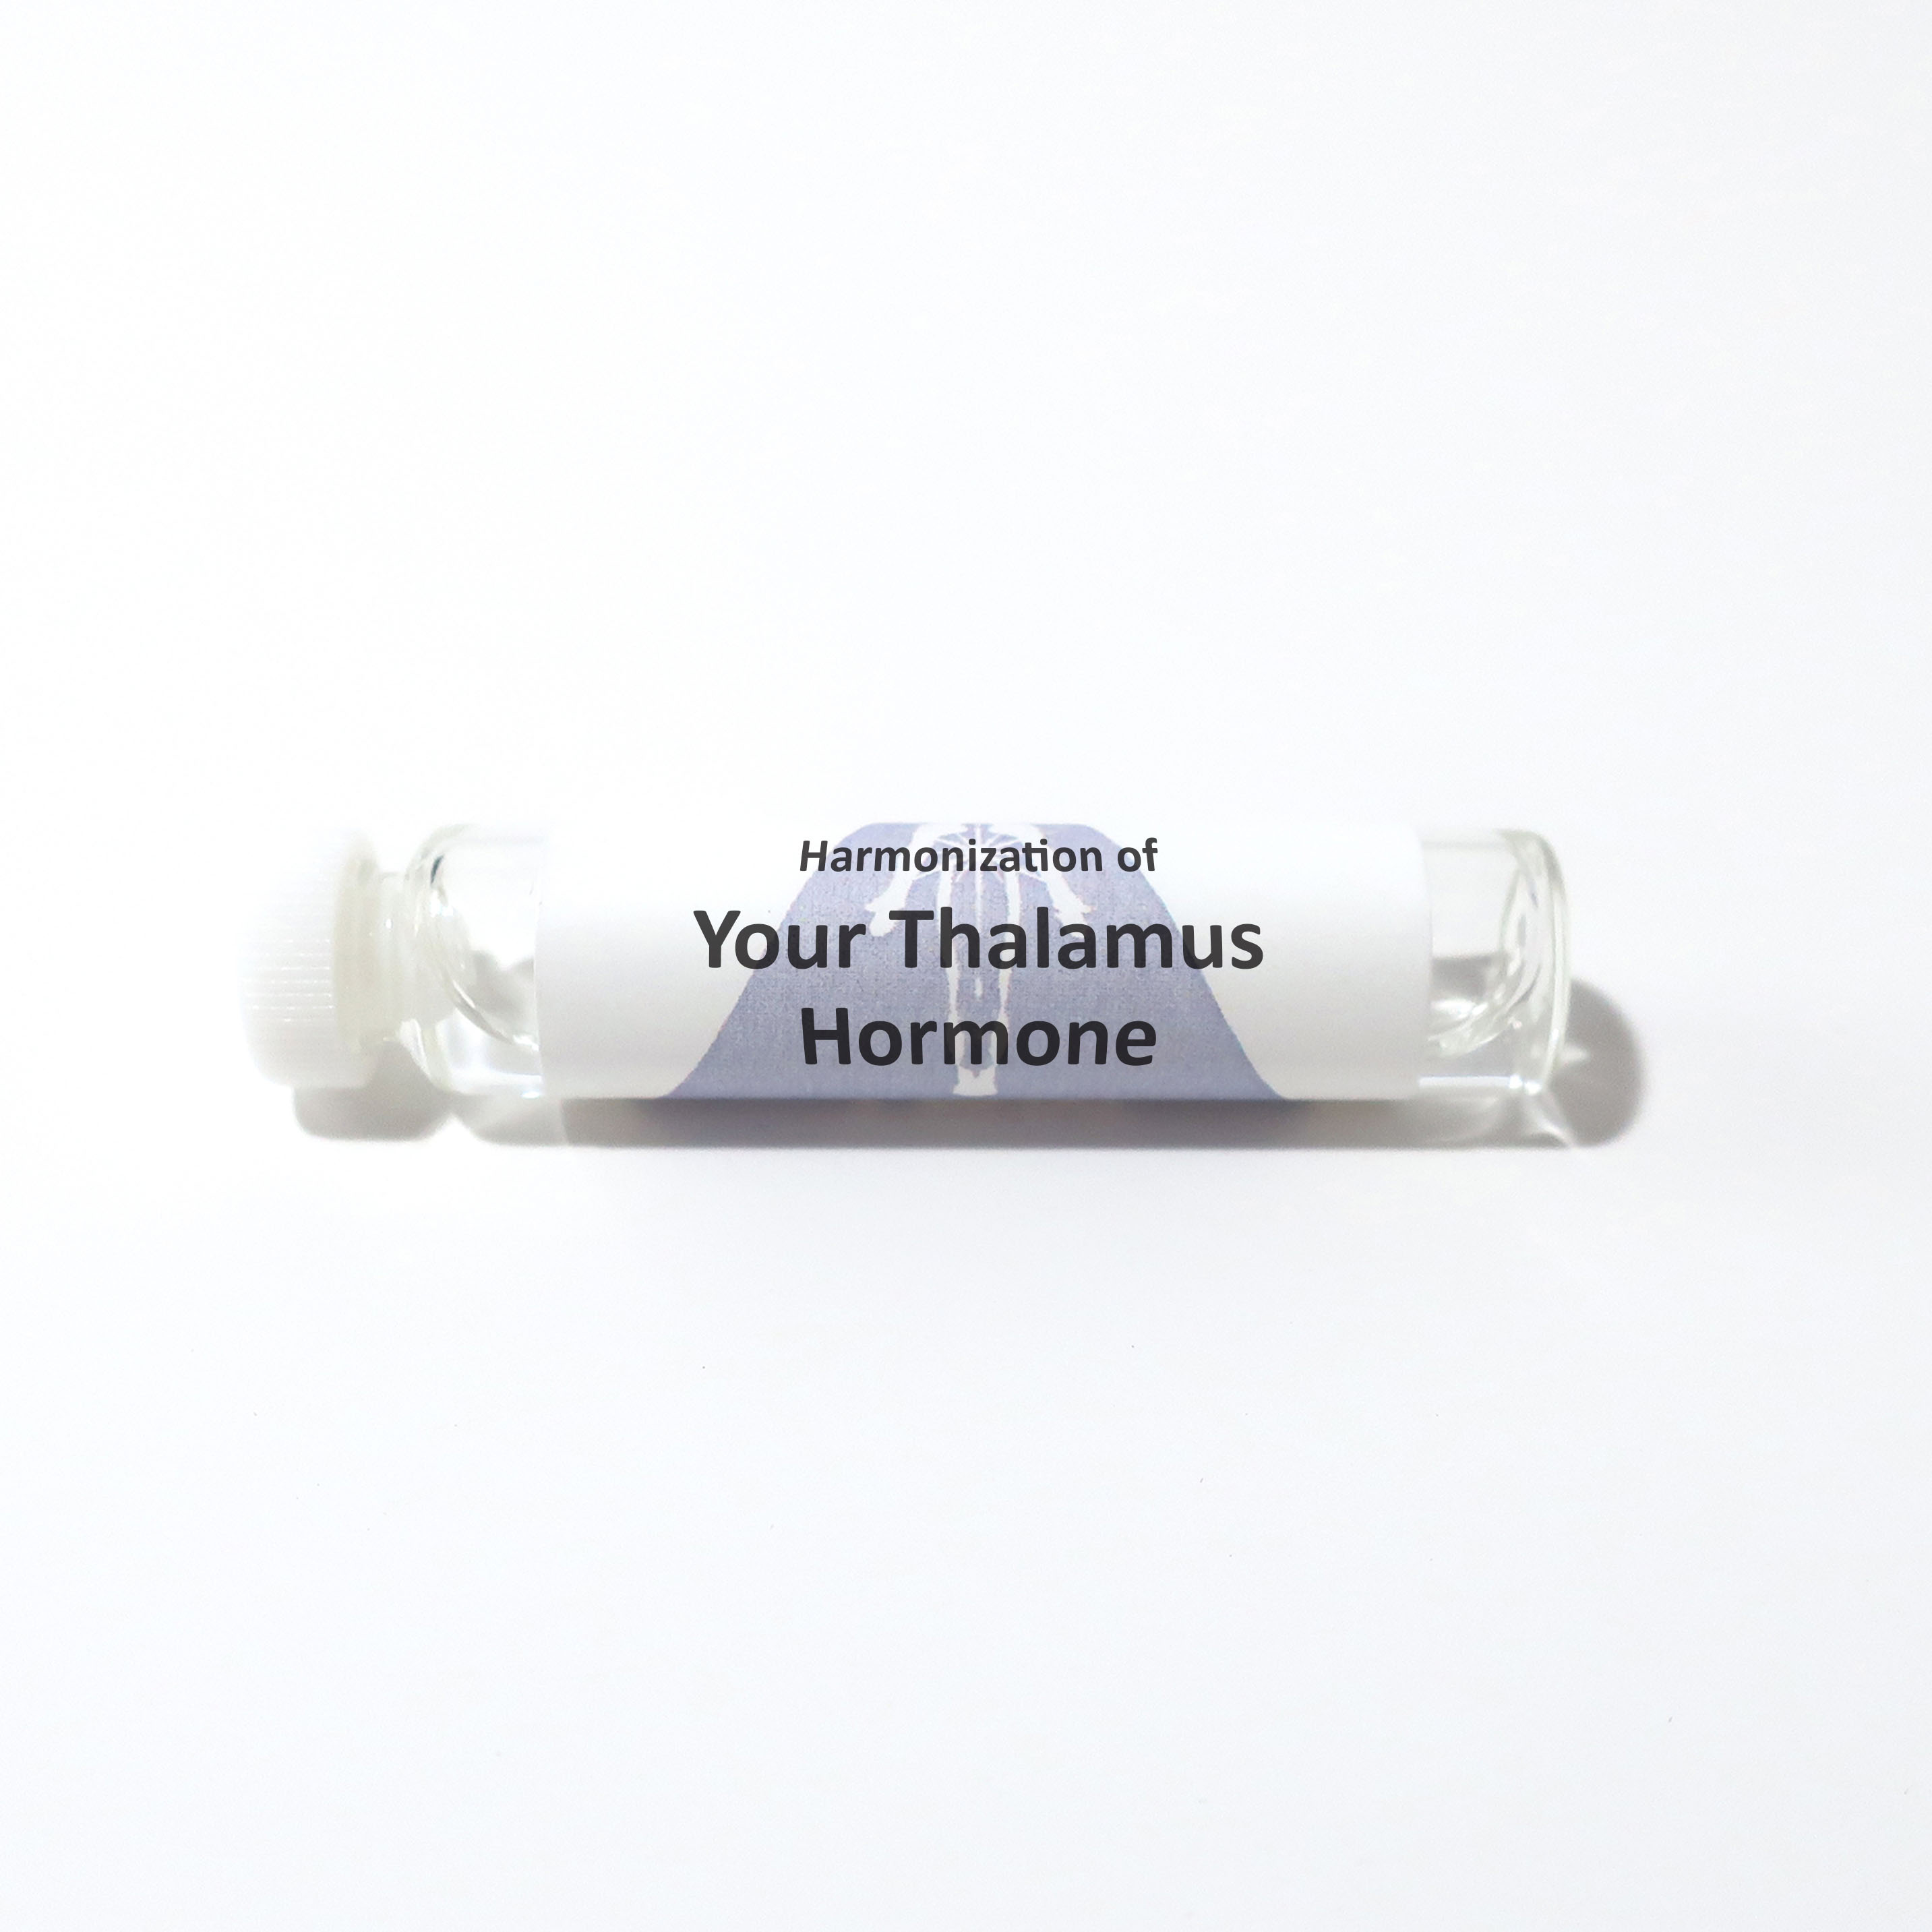 Your Thalamus Hormone